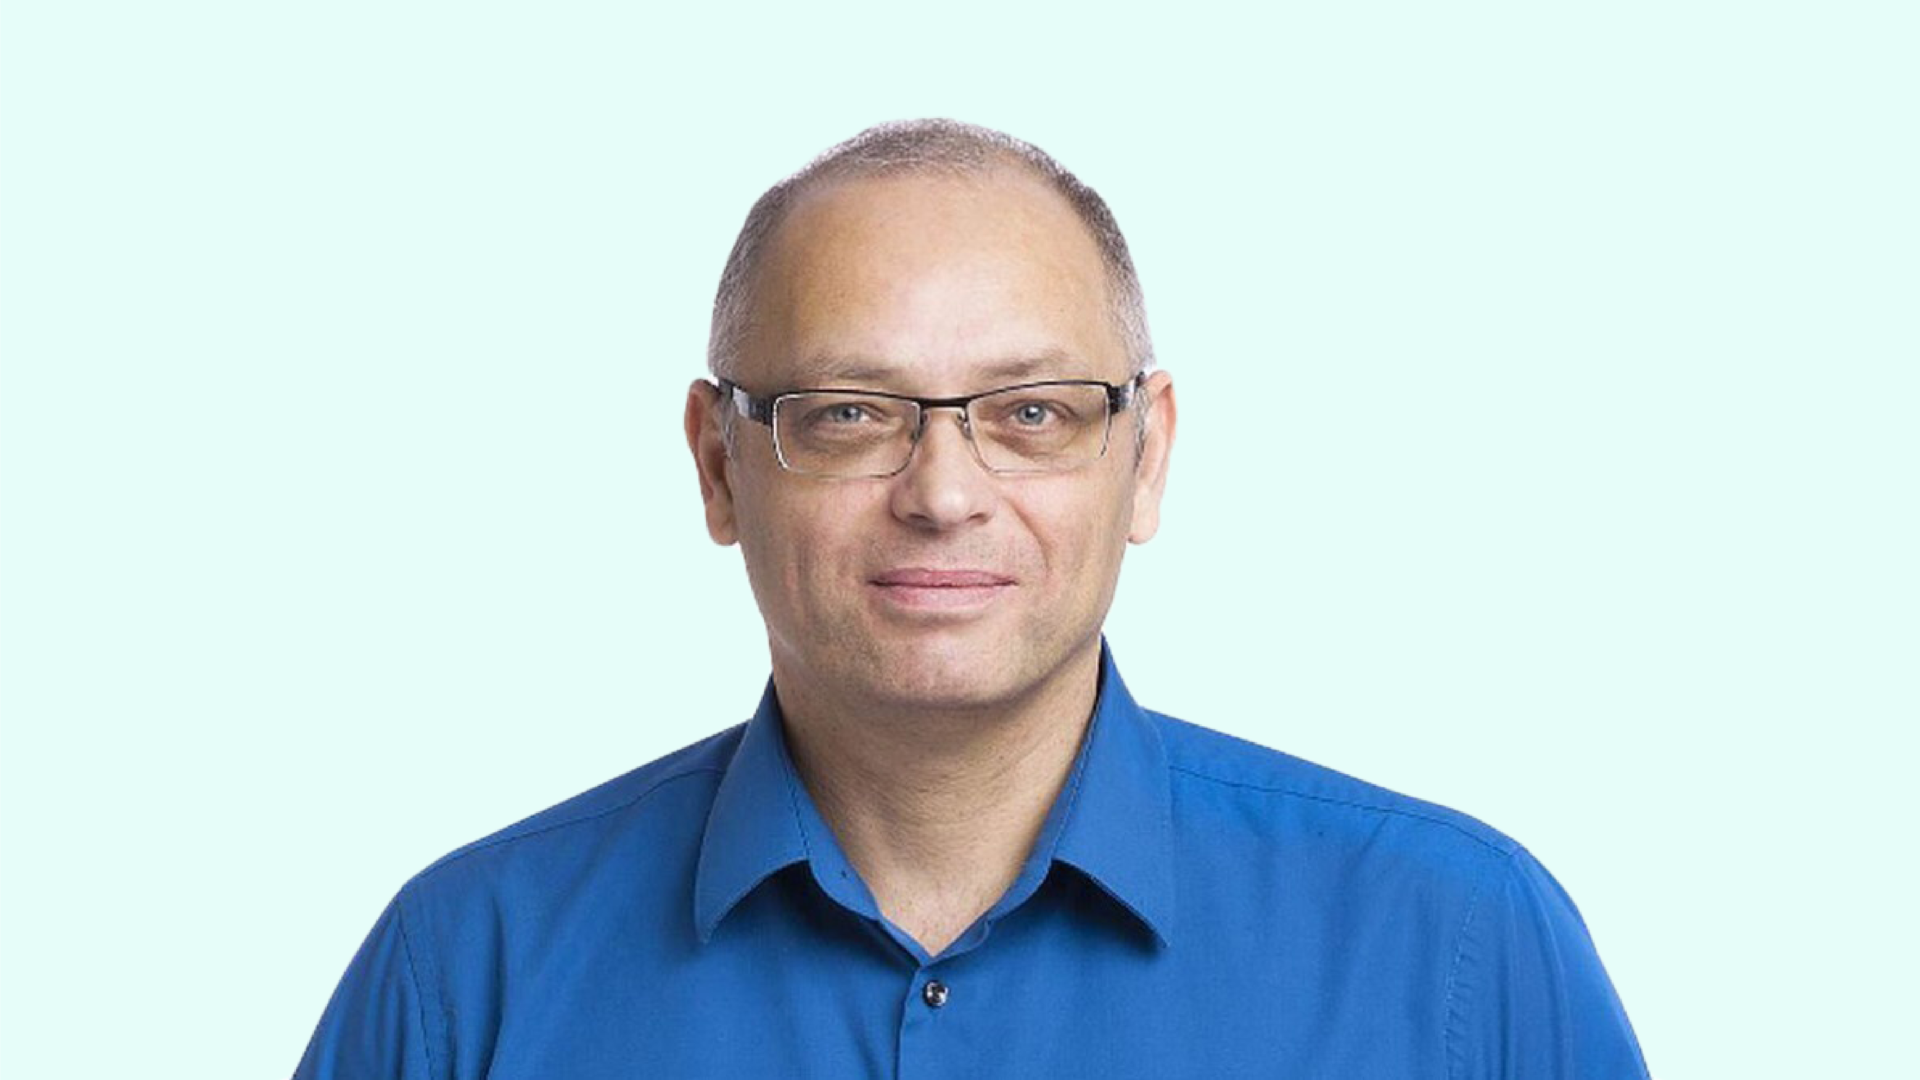 Tomasz Janiszewski